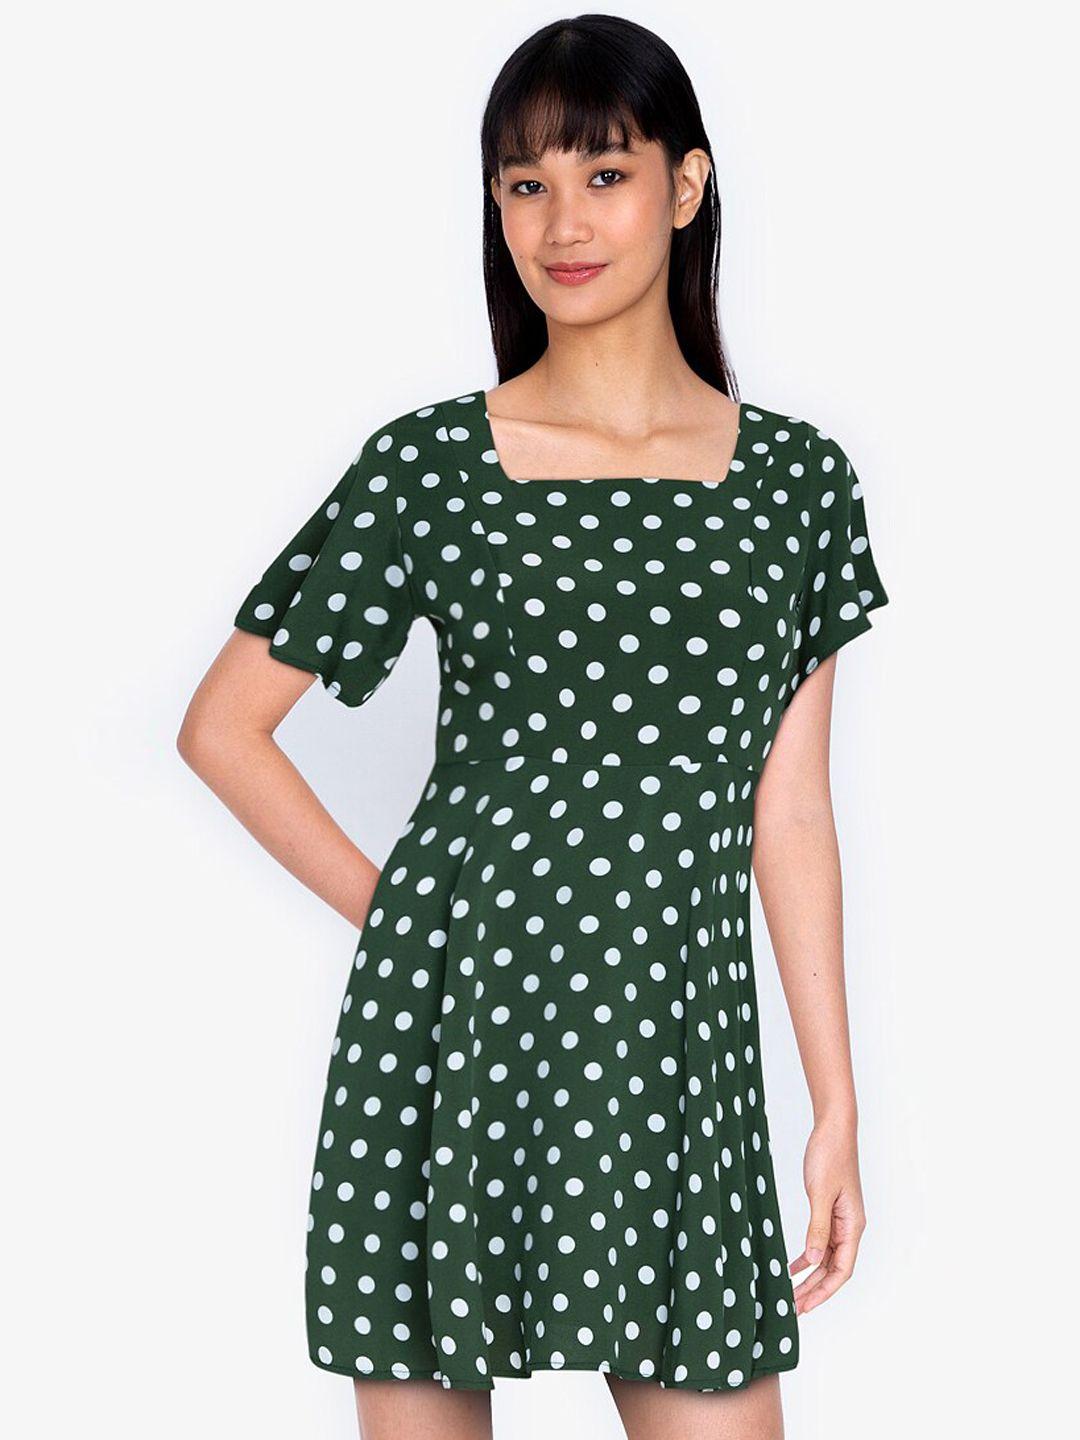 zalora basics women green & white polka dots dress